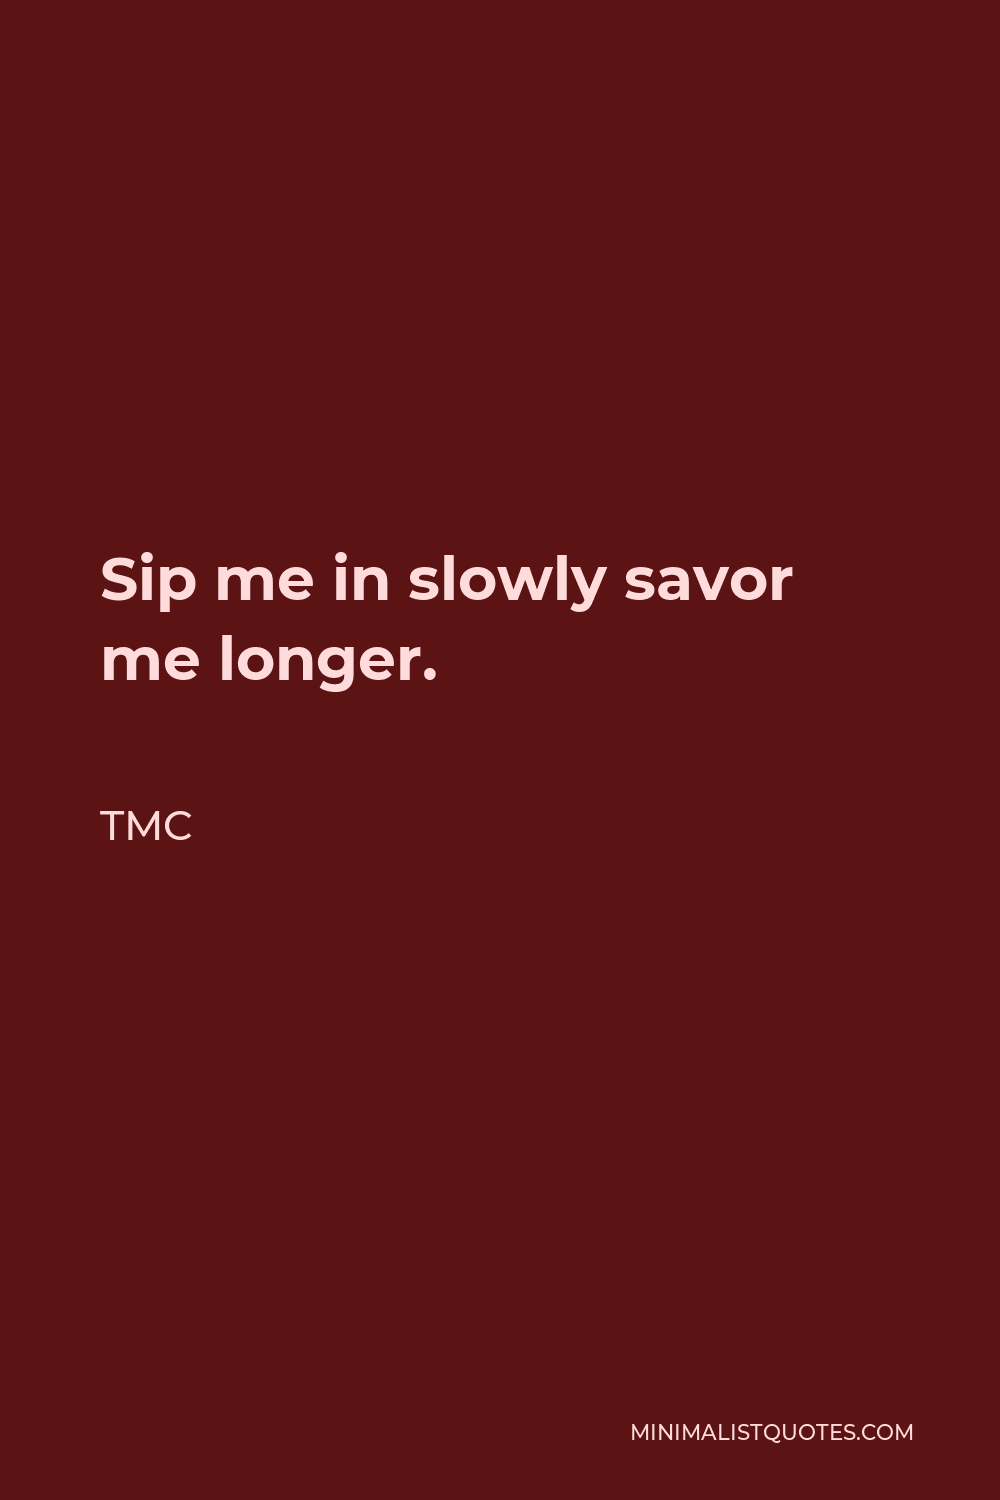 TMC Quote - Sip me in slowly savor me longer.